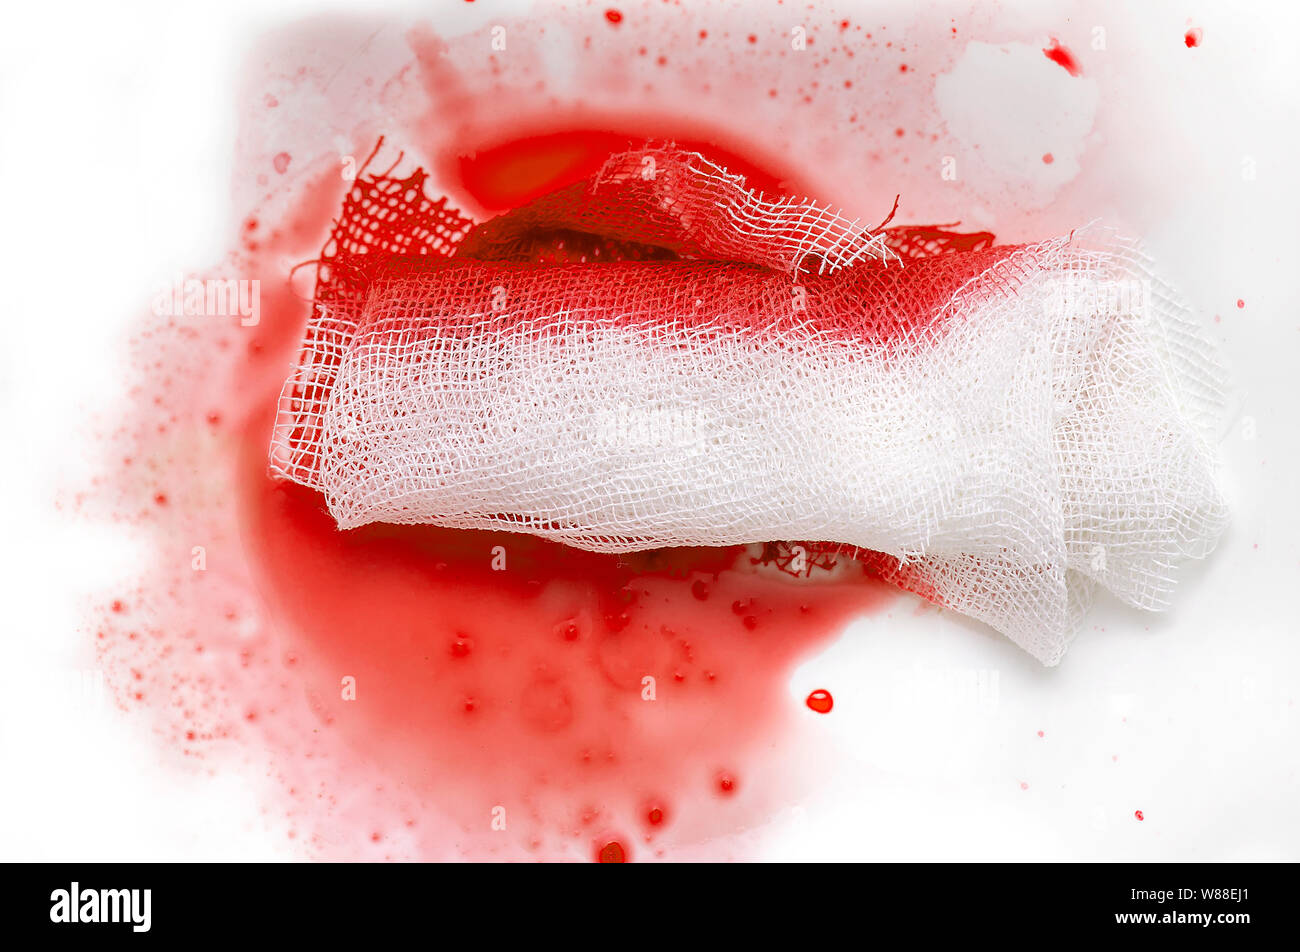 Close-up Blood with Gauze, bloody gauze bandage Stock Photo